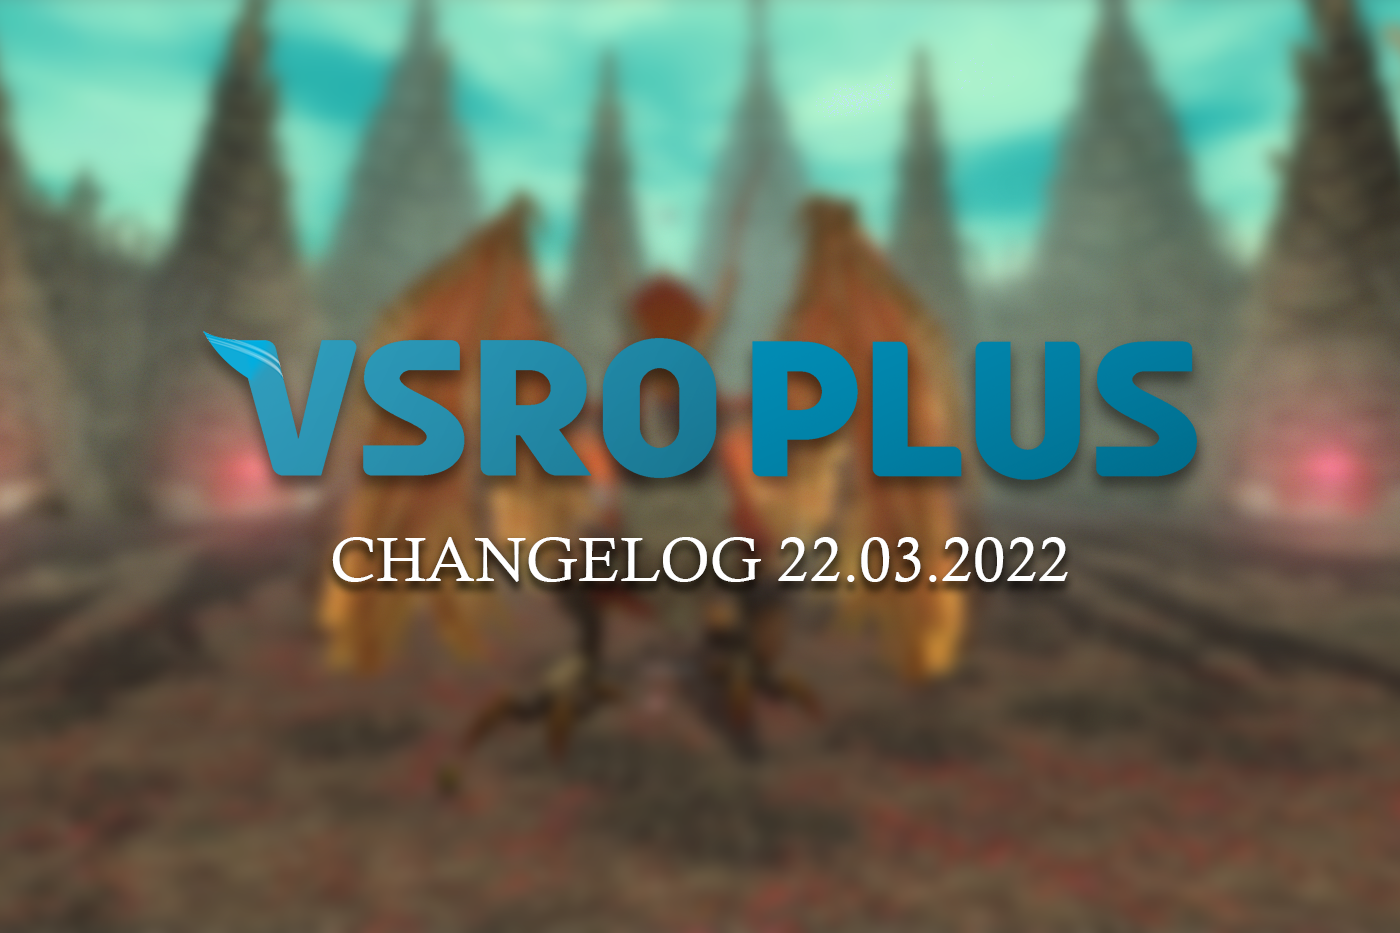 A New Journey - Changelog v3.7.0